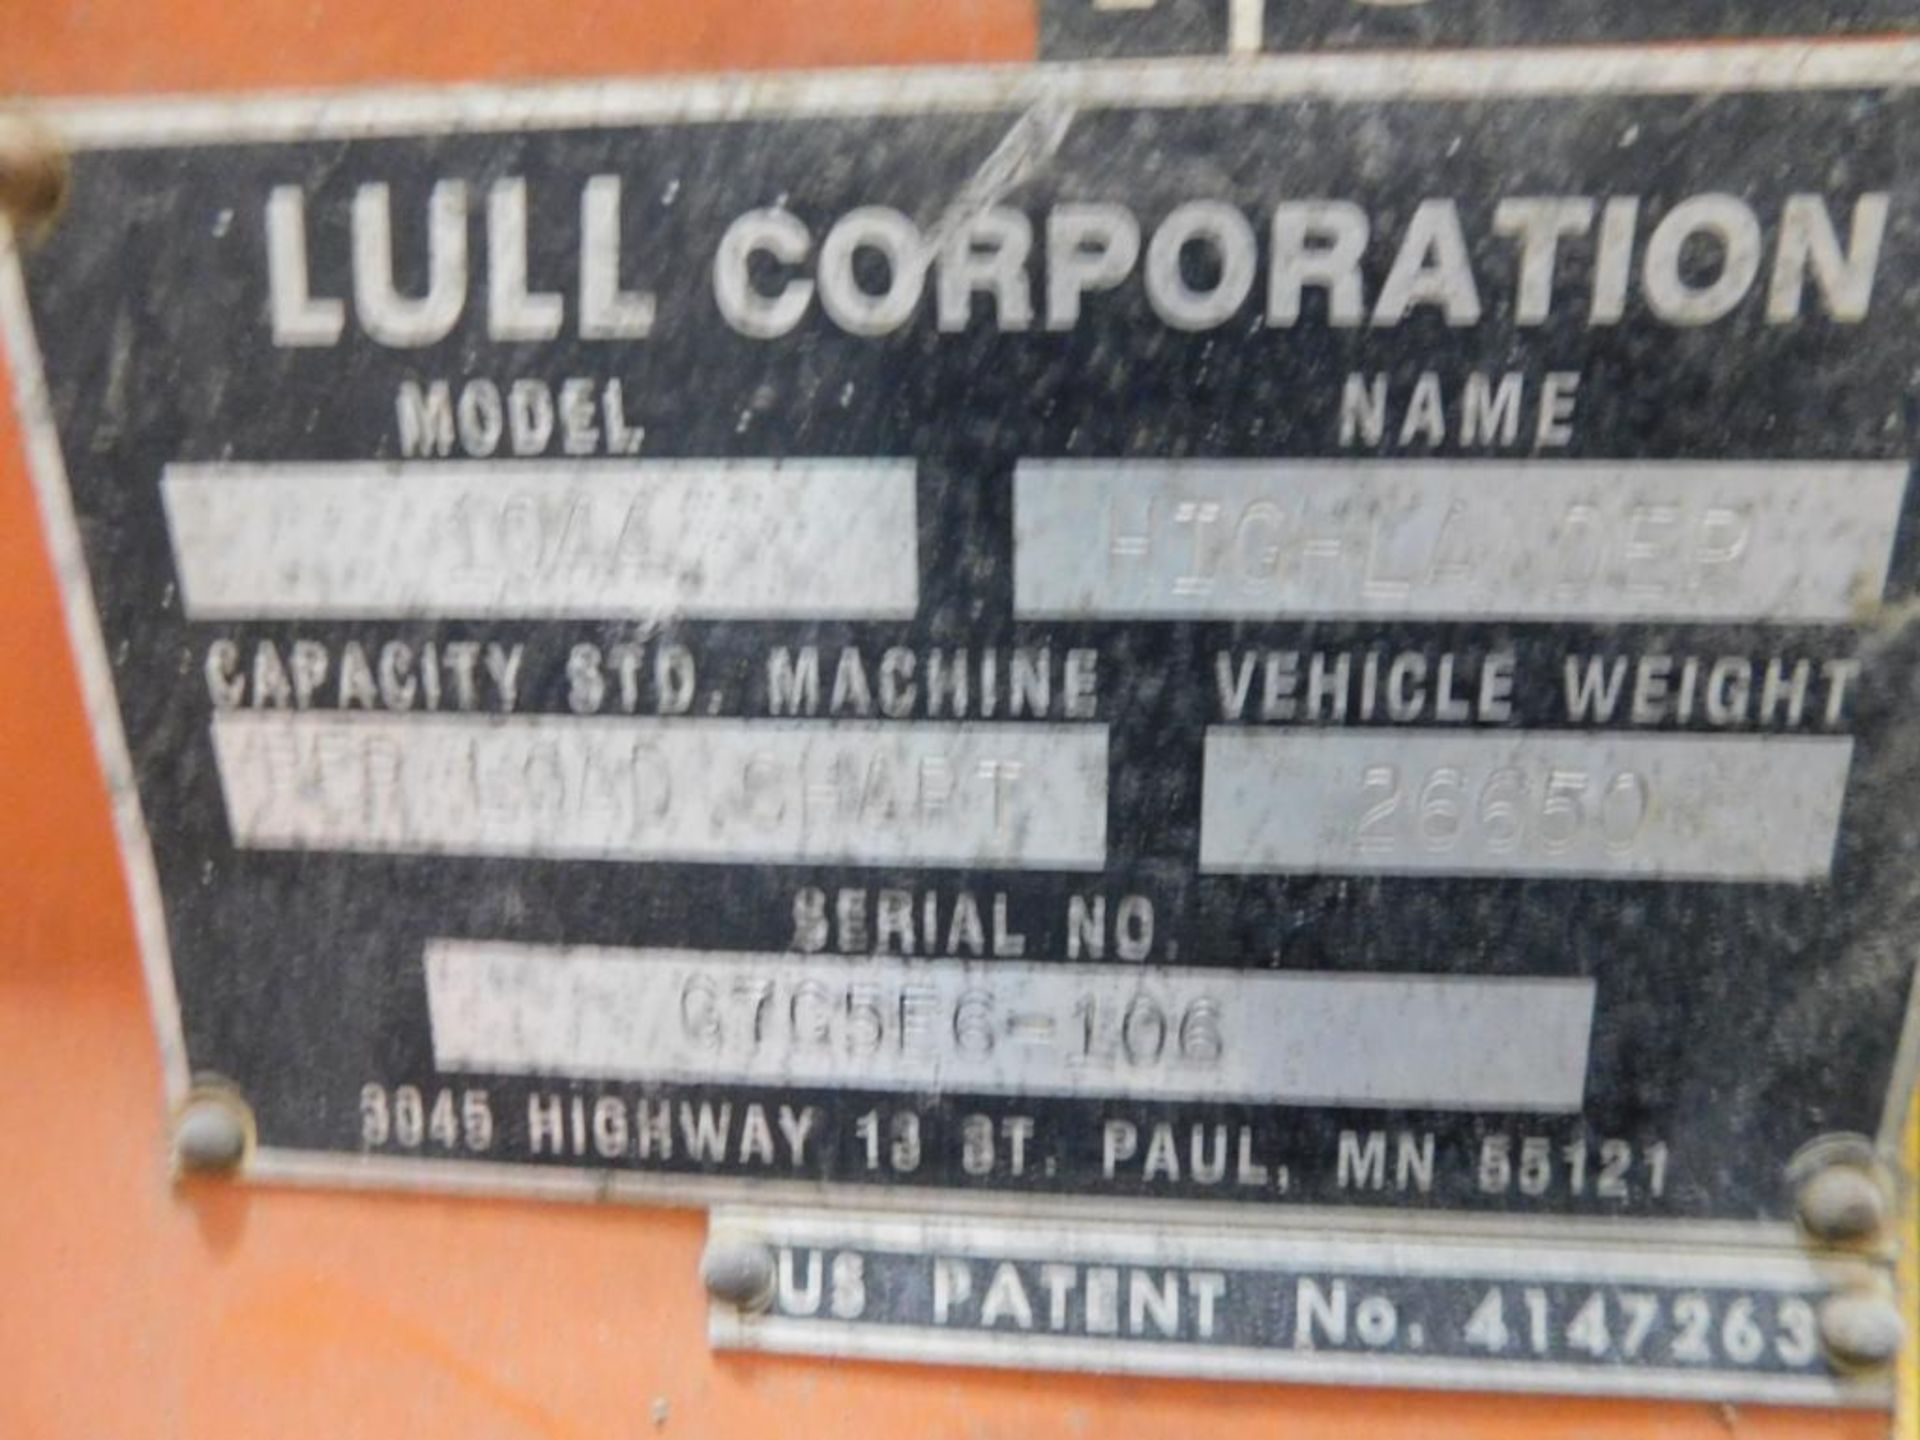 LULL Highlander 1044 Telescopic Forklift, 42" Forks, 10,000 lb. Capacity, S/N G765F6-106, 4,407 Indi - Image 10 of 11